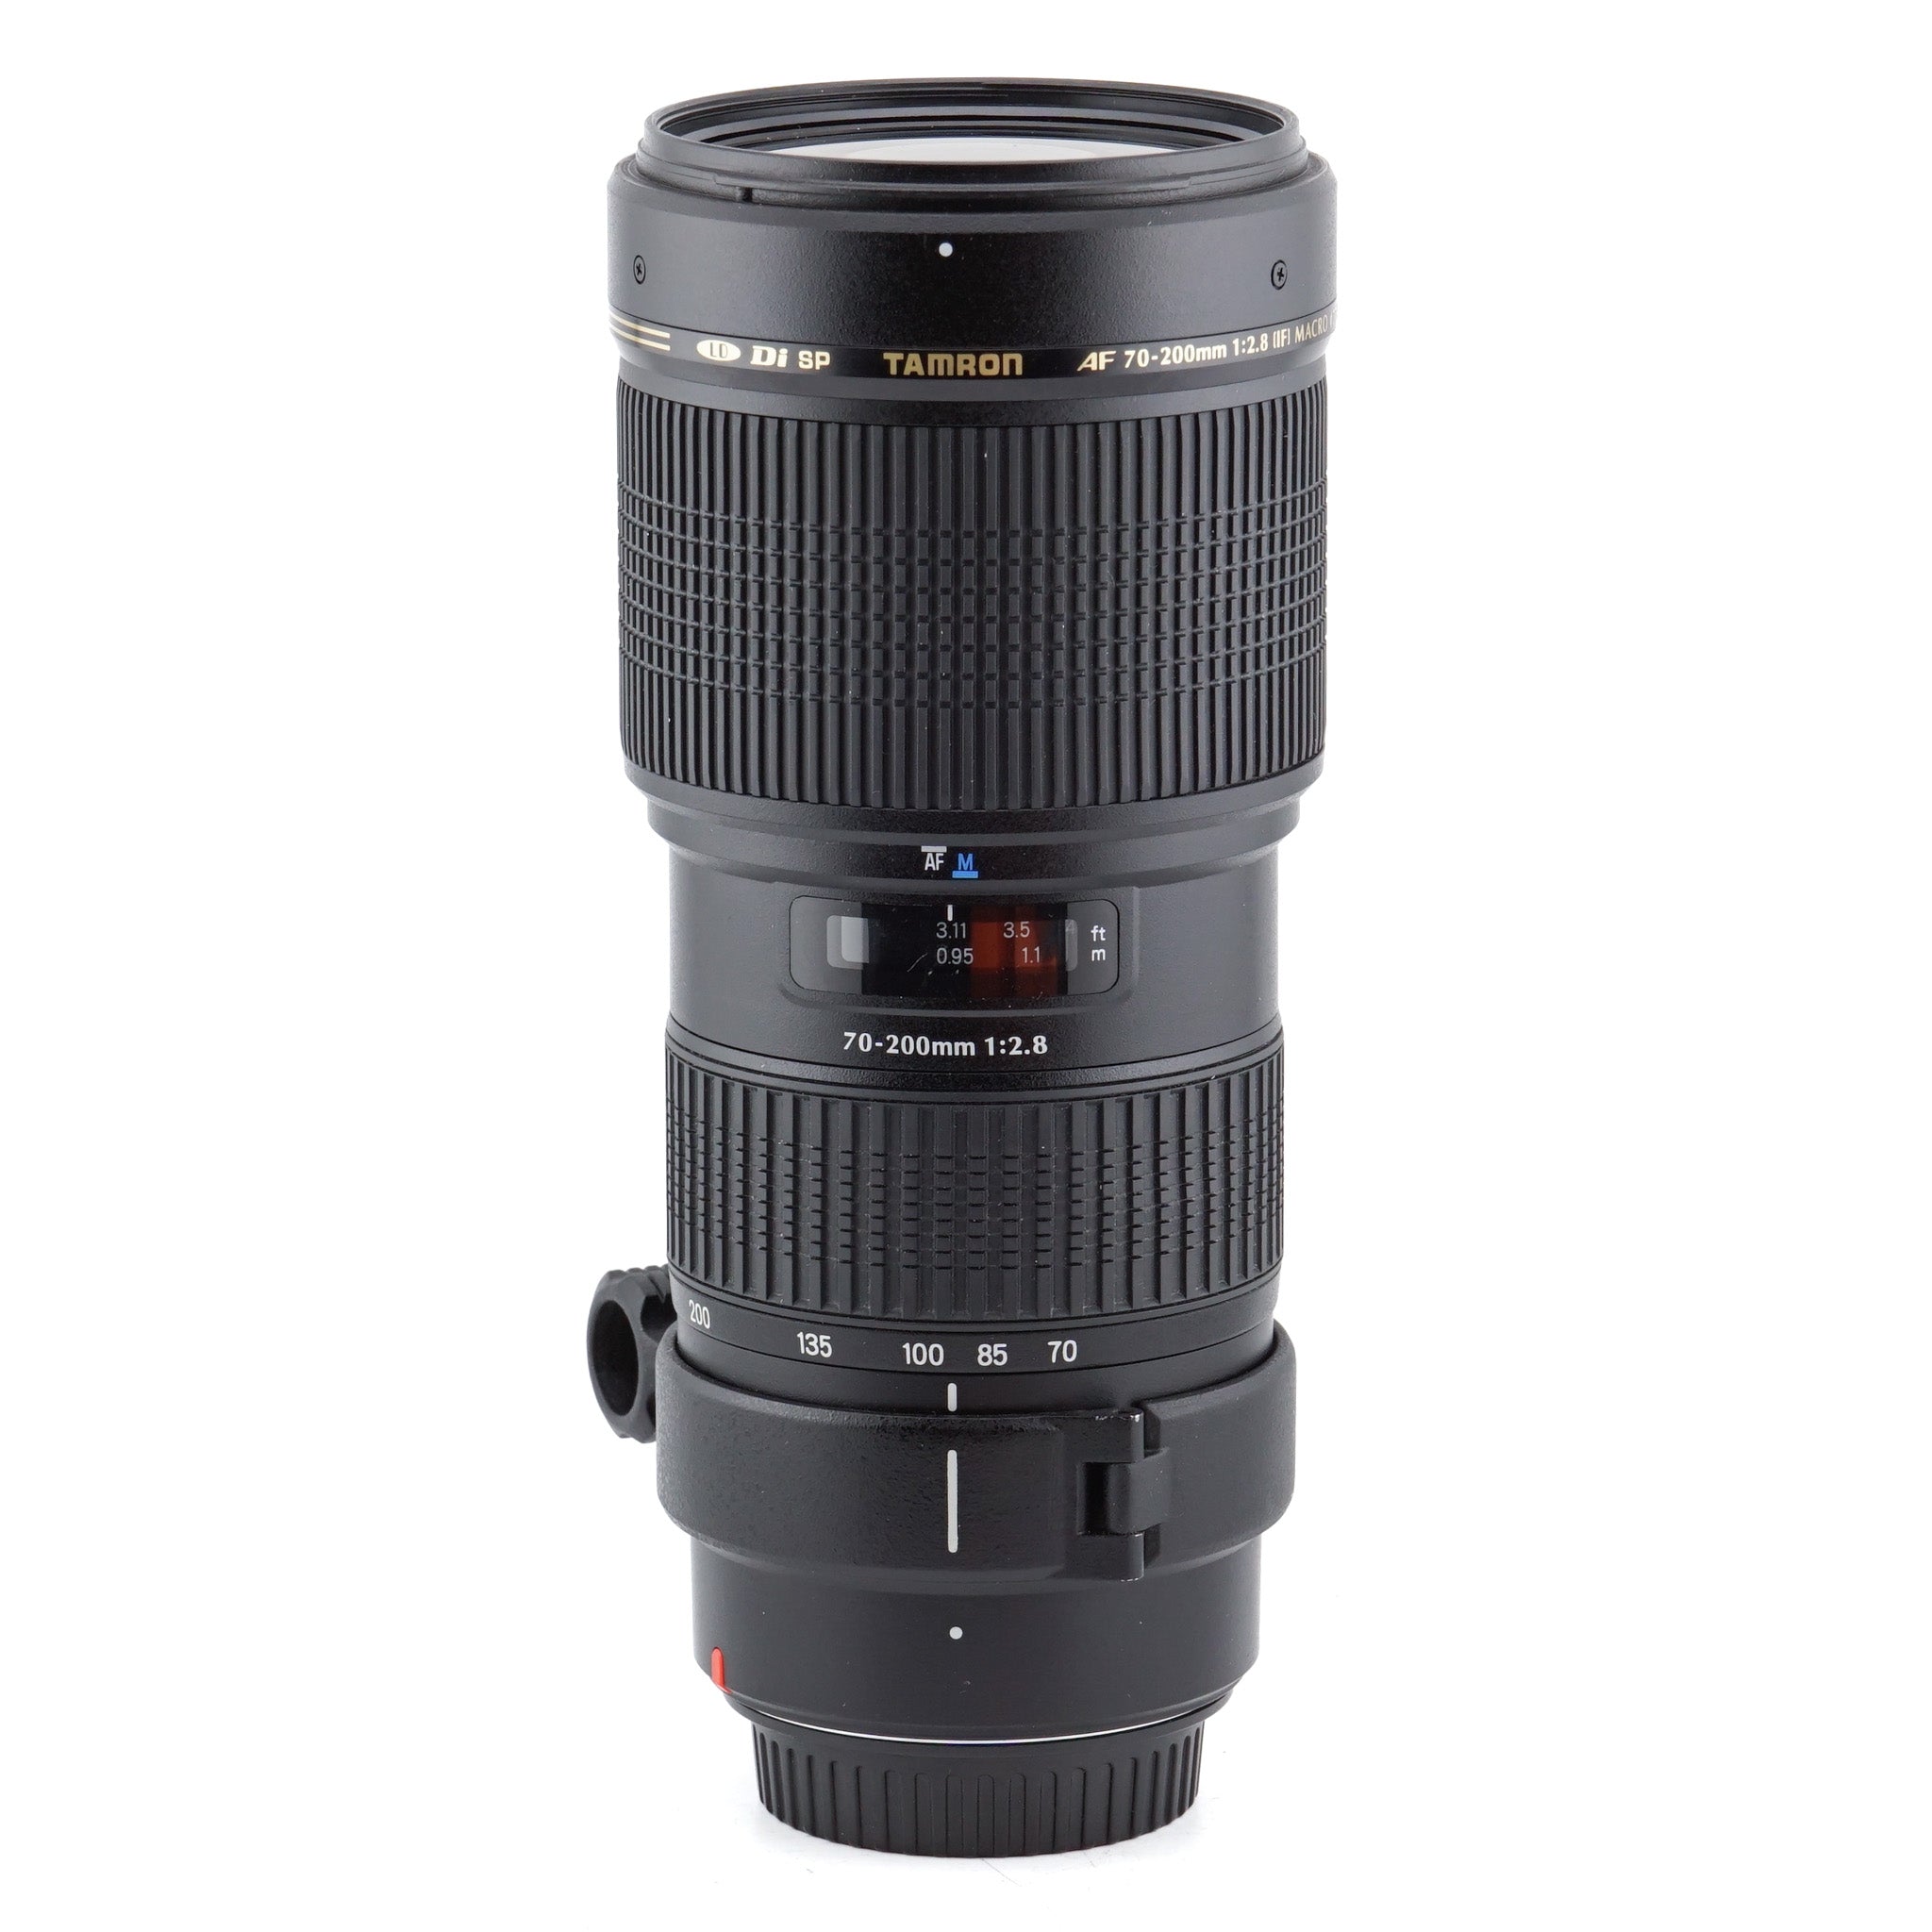 Tamron 70-200mm f2.8 Di LD IF SP Macro (A001) - Lens